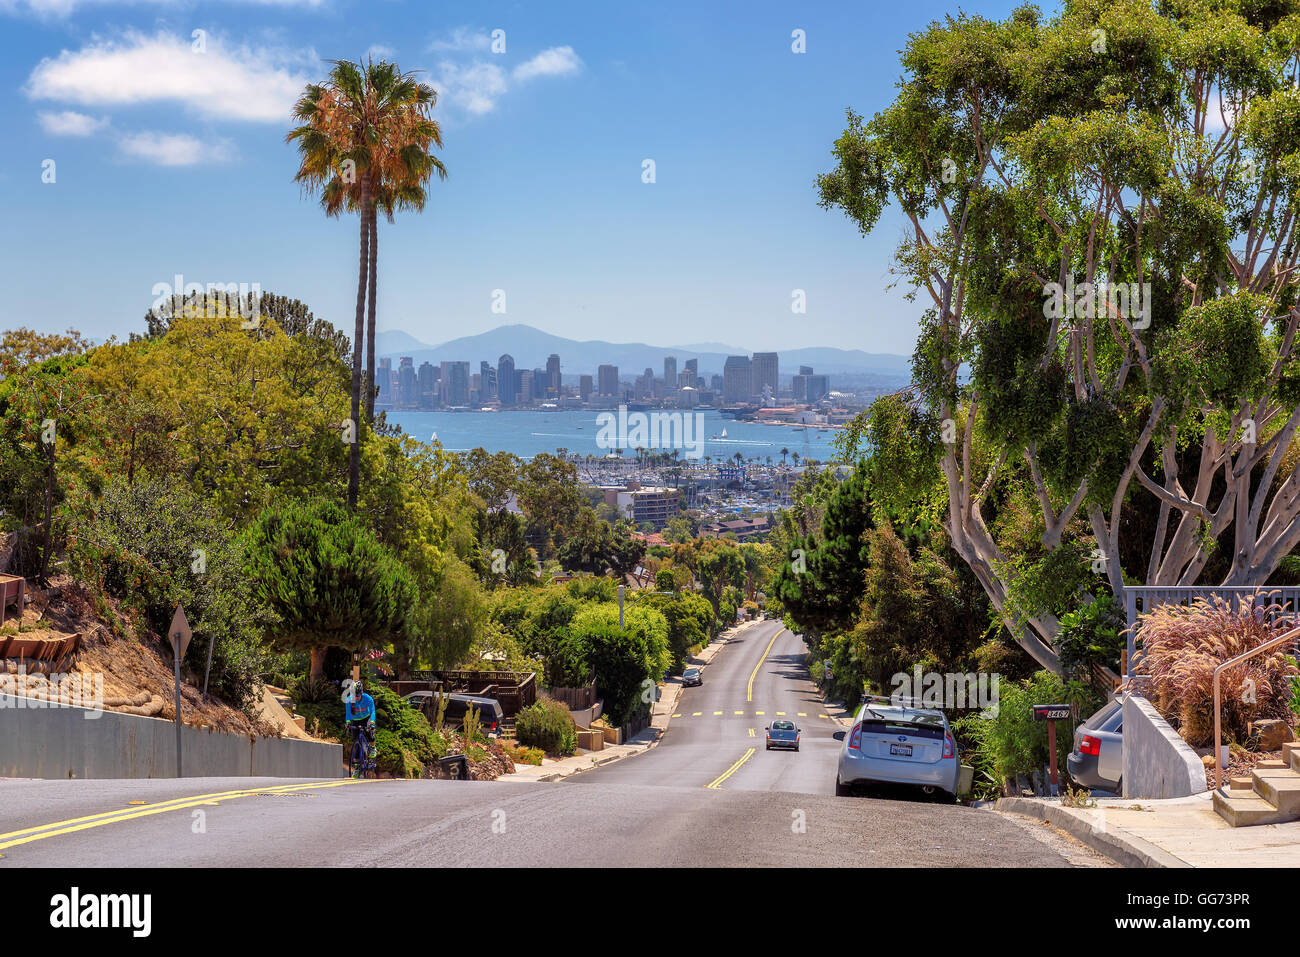 La vista de la ciudad de San Diego, con las calles de la ciudad Foto de stock